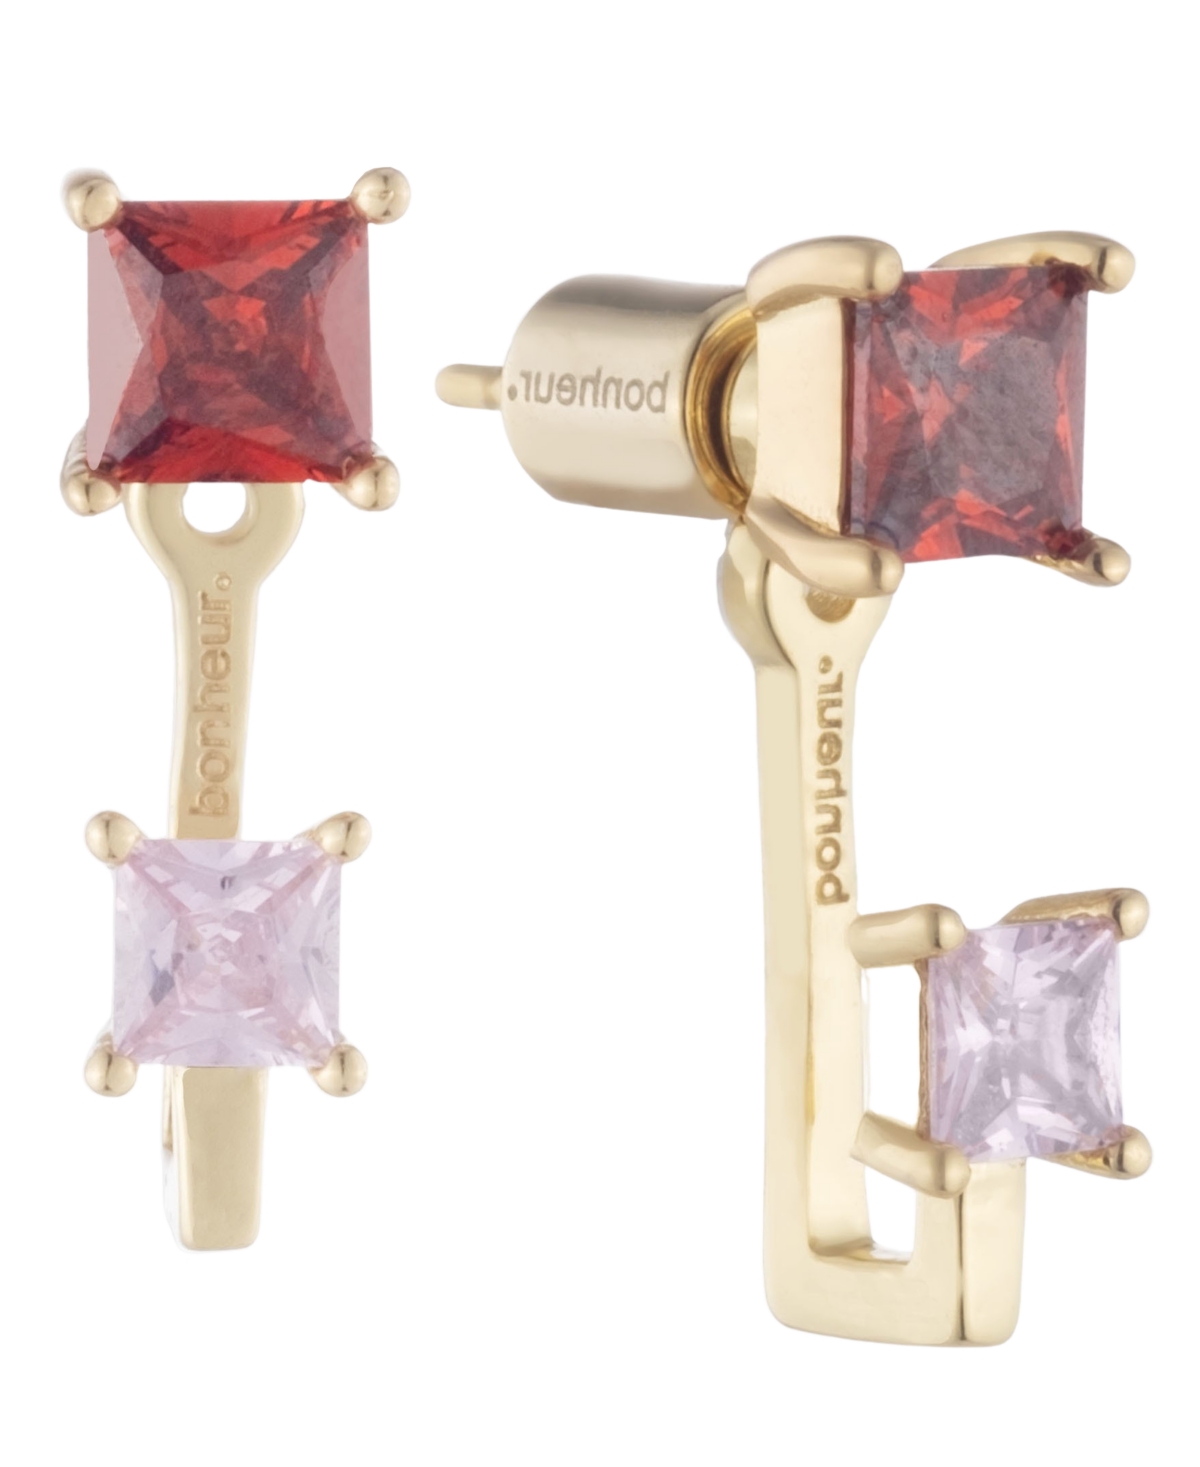 Bonheur Jewelry Rachelle Stud Pink Red Earrings With Ear Jackets In Karat Gold Plated Brass